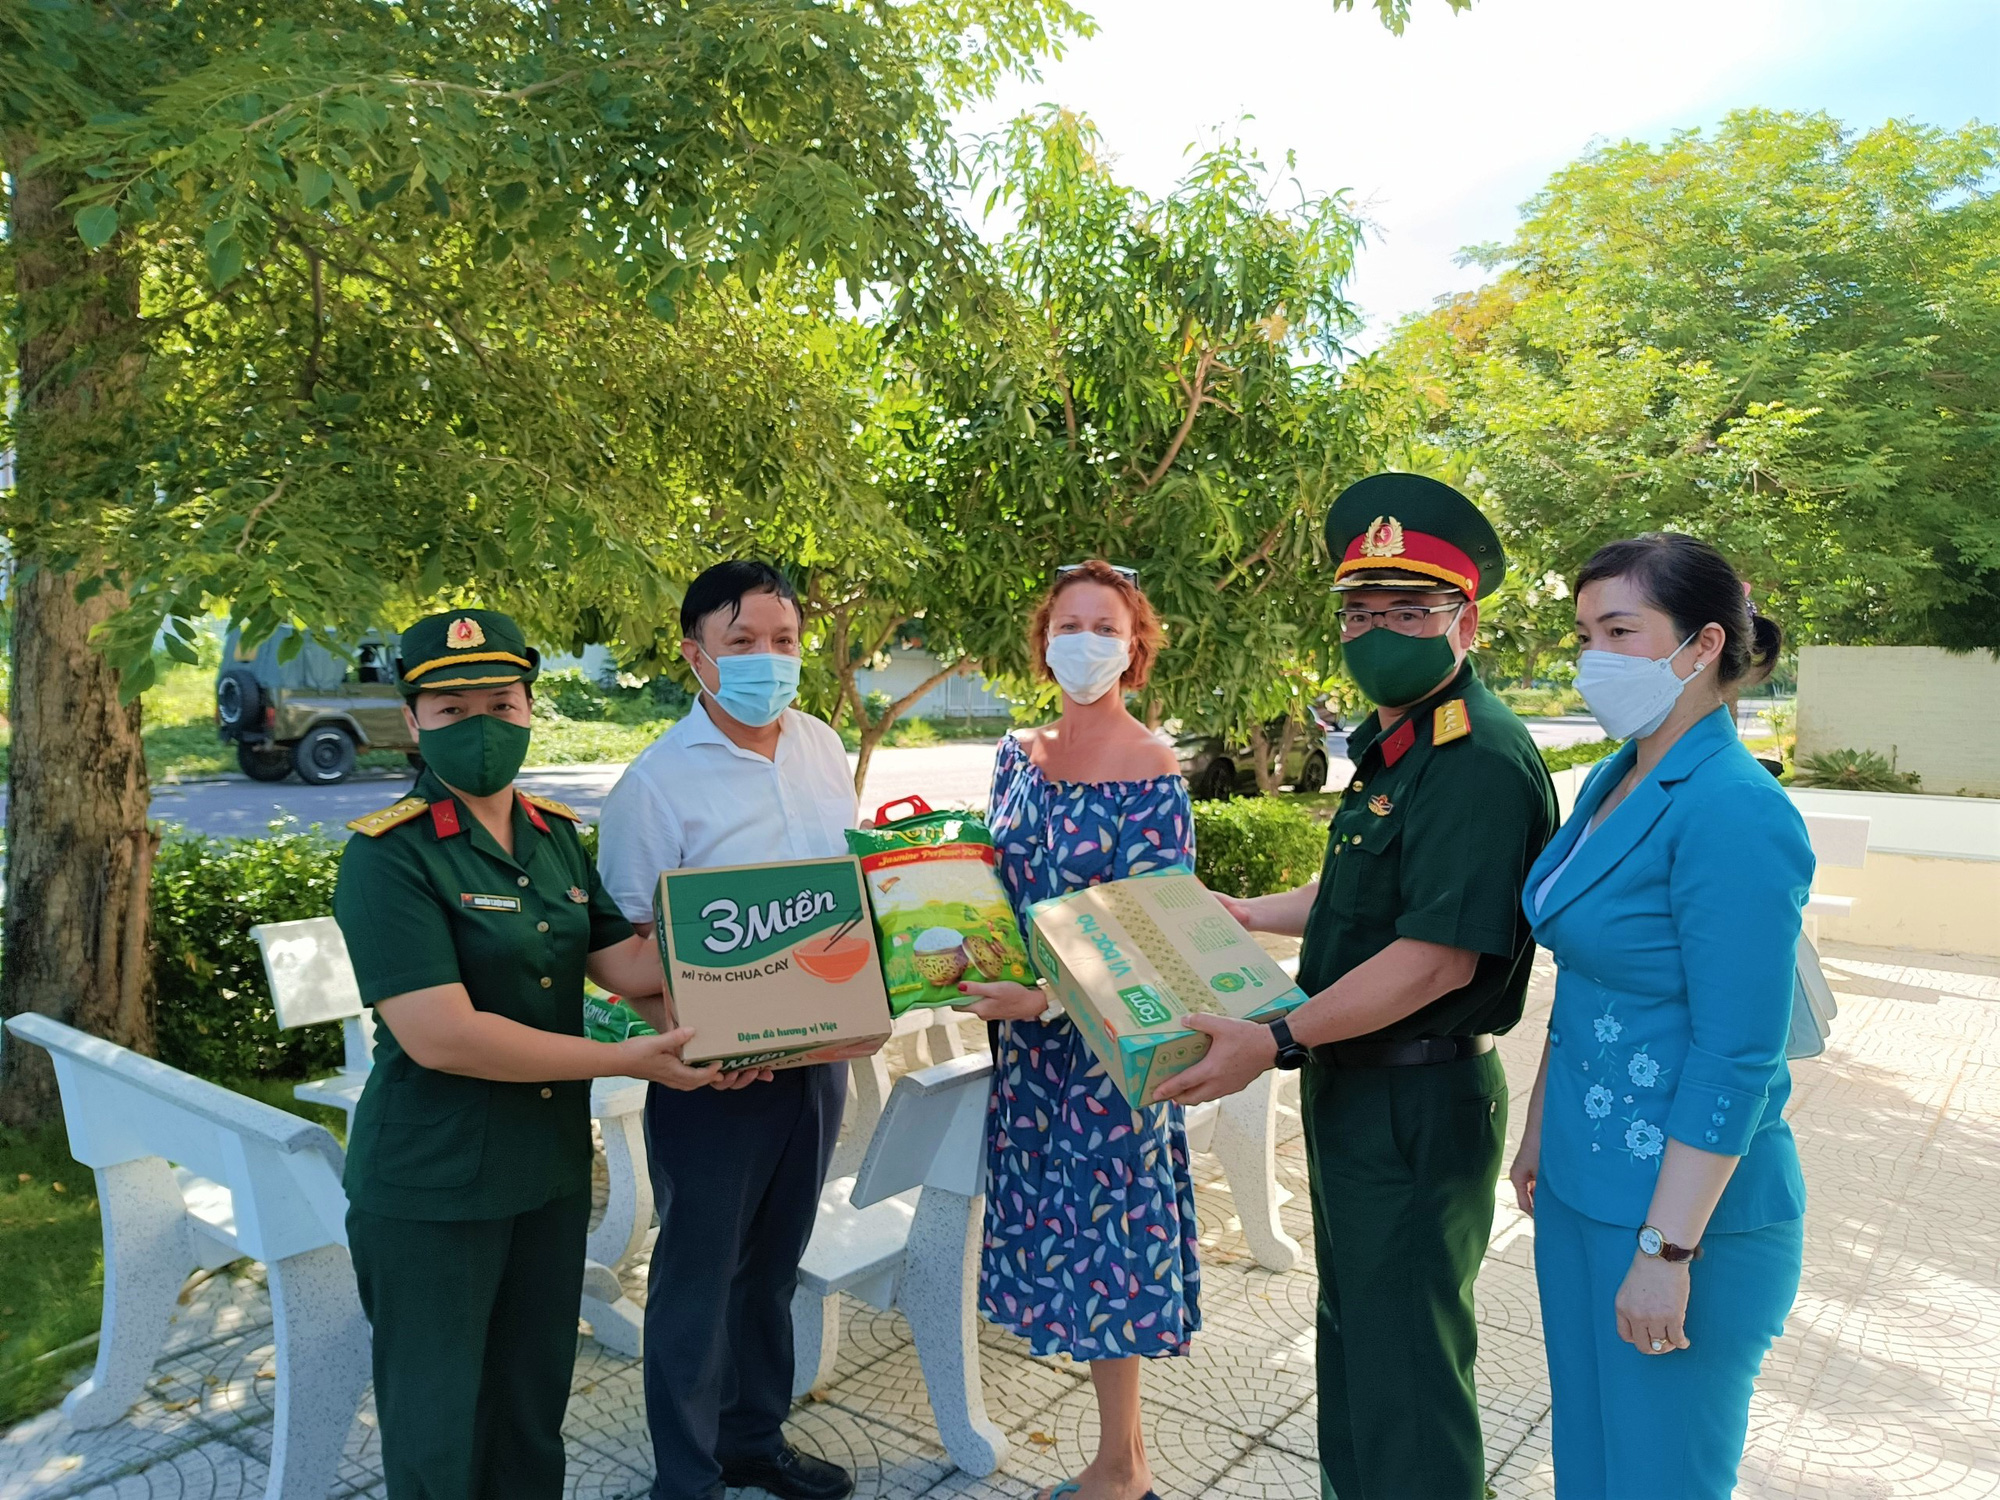 Офицеры военного командования и Союза молодежи провинции Кханьхоа передают продукты питания жителю России в городе Нячанг, Вьетнам, 31 июля 2021 года. Фото: Minh Chien / Tuoi Tre